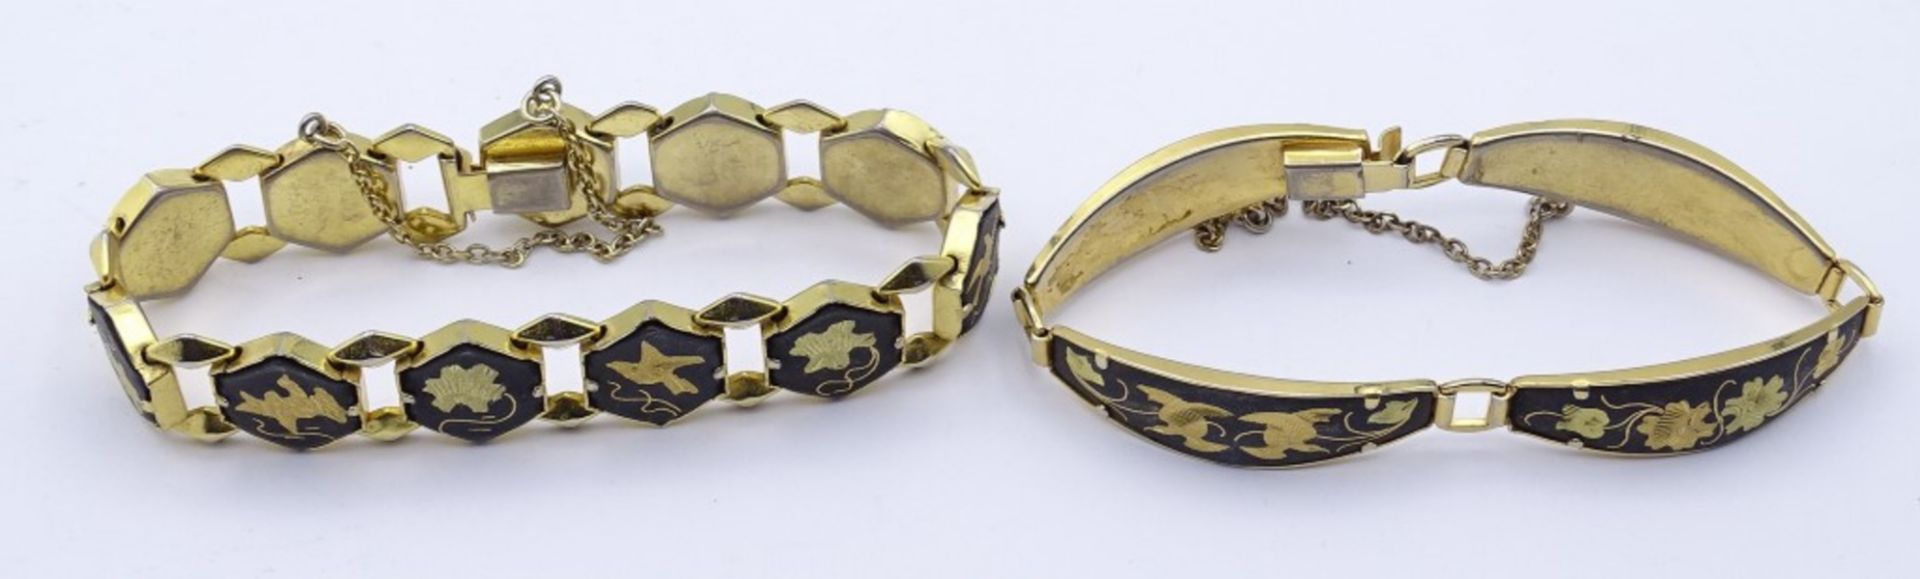 zwei goldfarbene Armbänder mit Tier und Blumenmotiven - Image 2 of 4